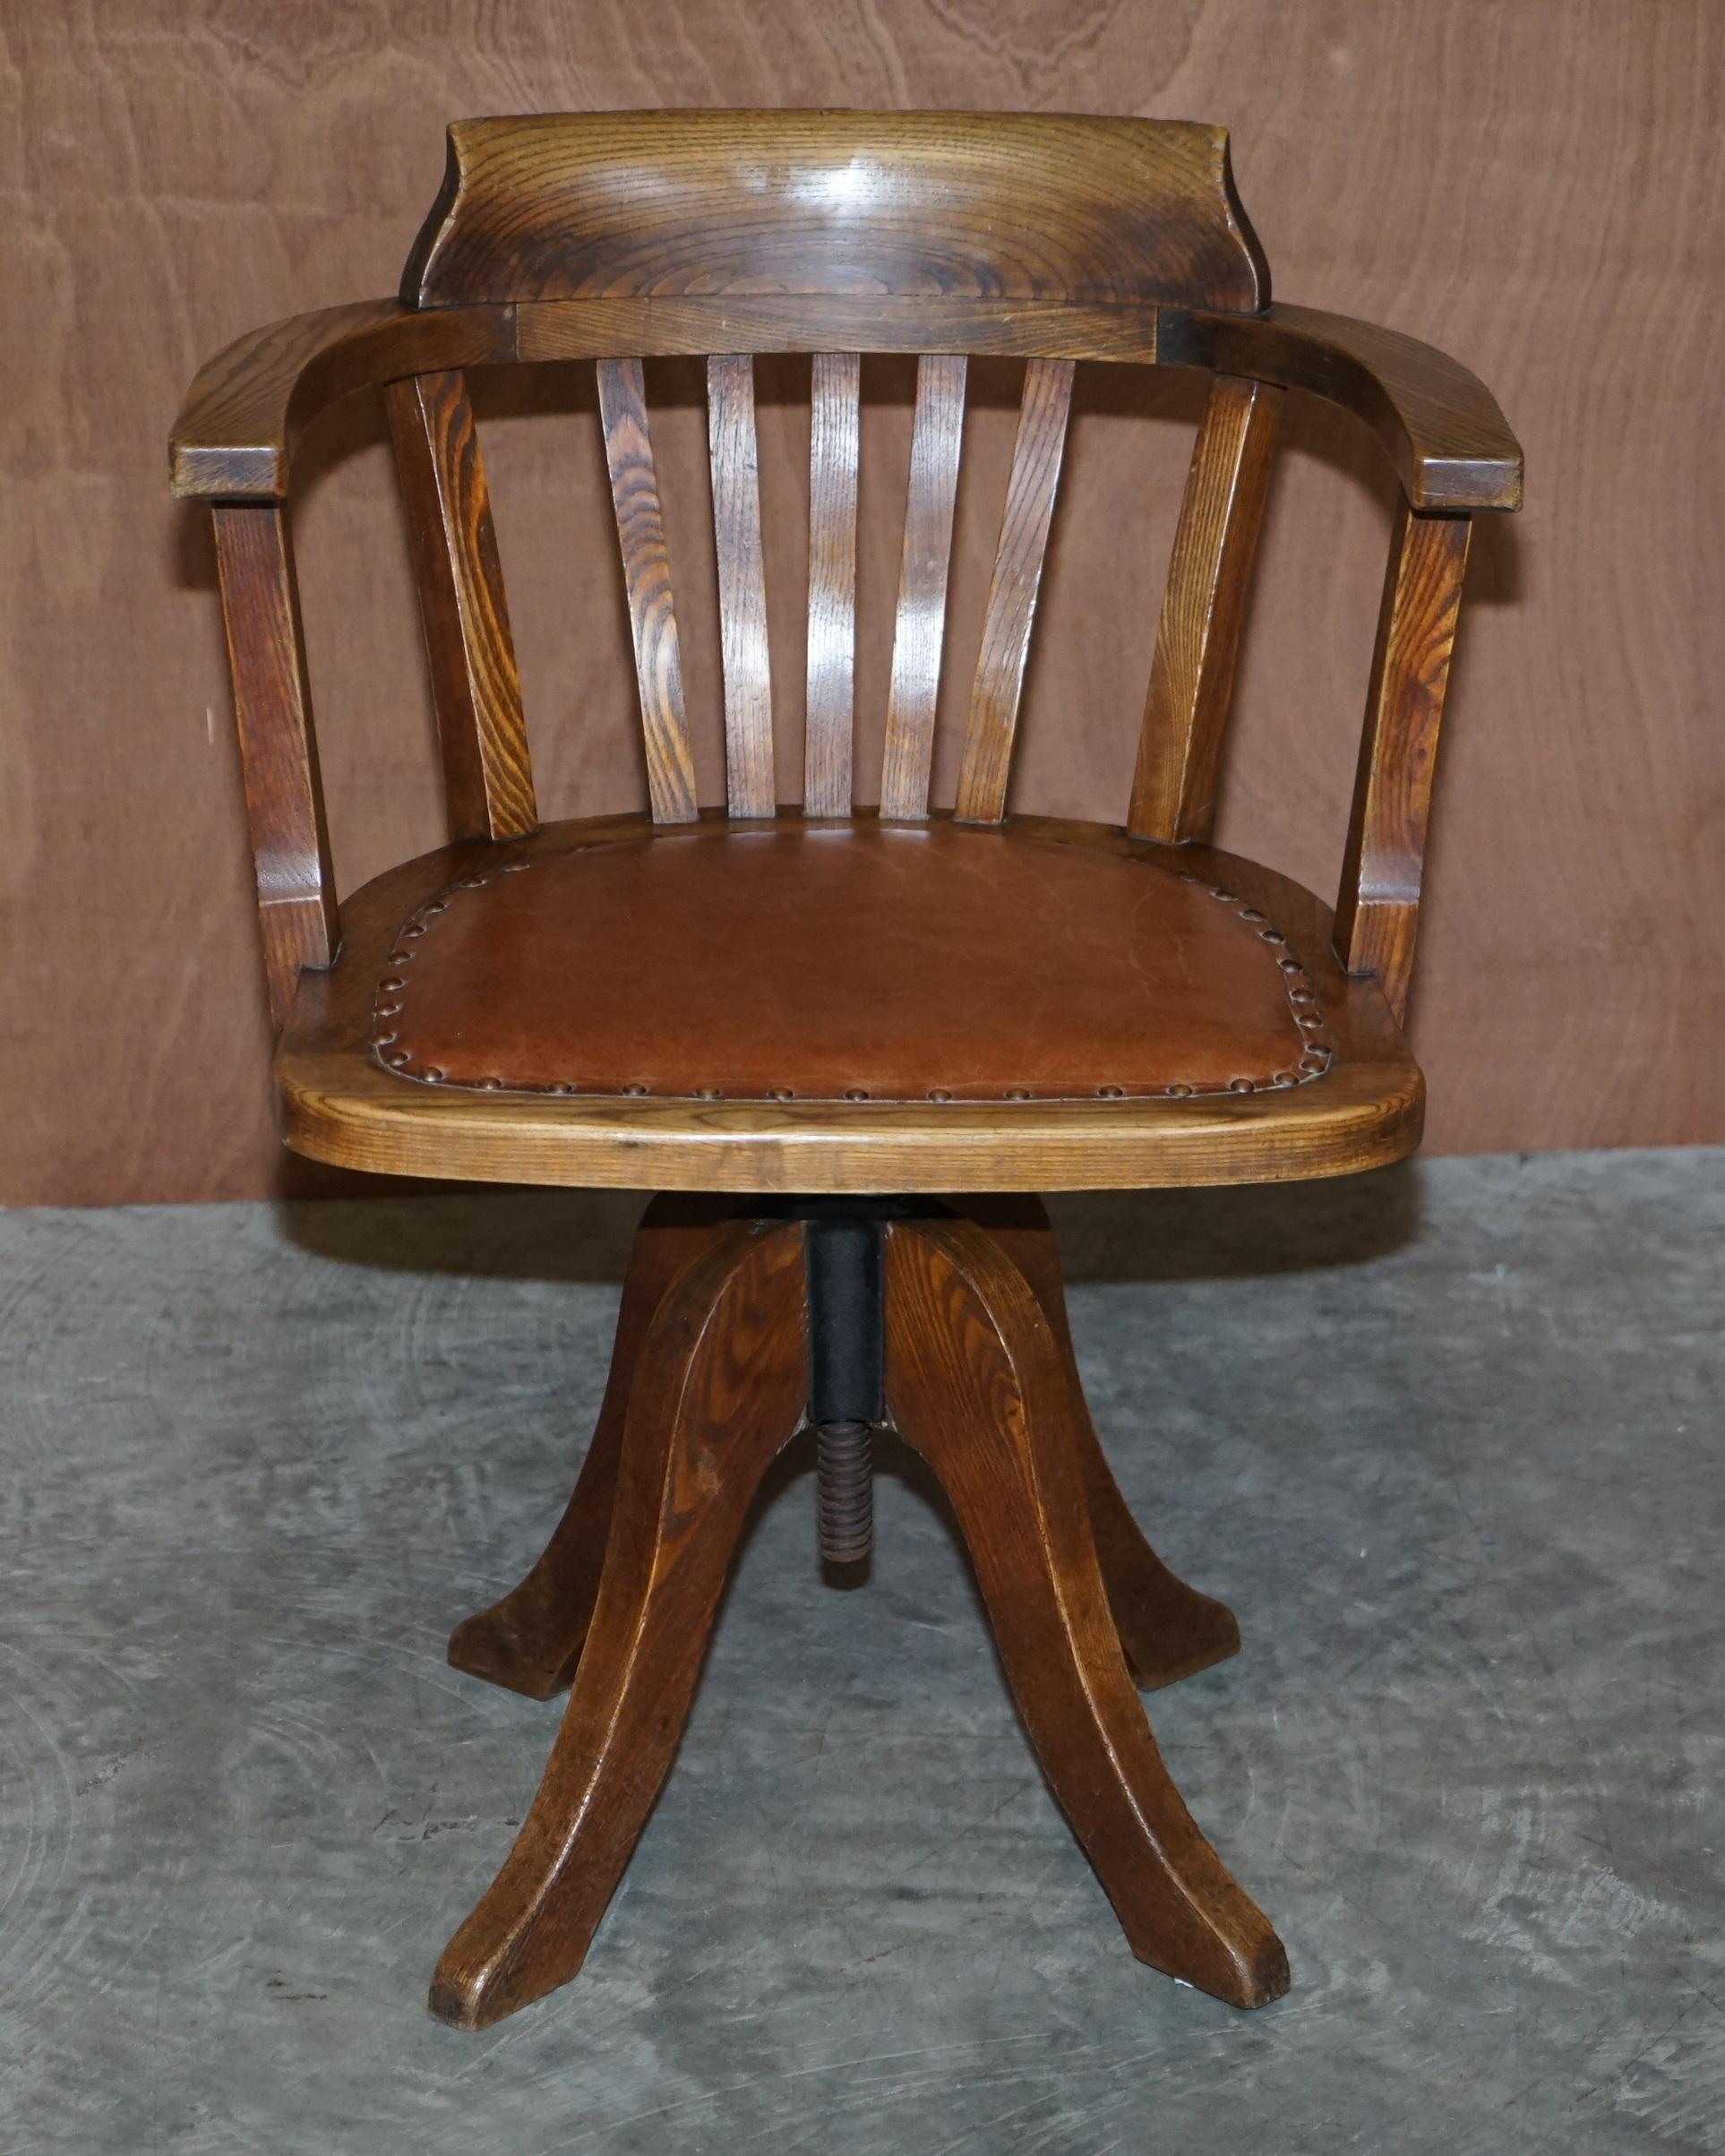 Nous sommes ravis de proposer ce fauteuil de directeur restauré, datant de 1900, avec une assise en cuir marron.

Cette chaise est vraiment exquise, elle a un cadre en chêne tigré, ce qui signifie que le bois a été coupé en biais pour lui donner